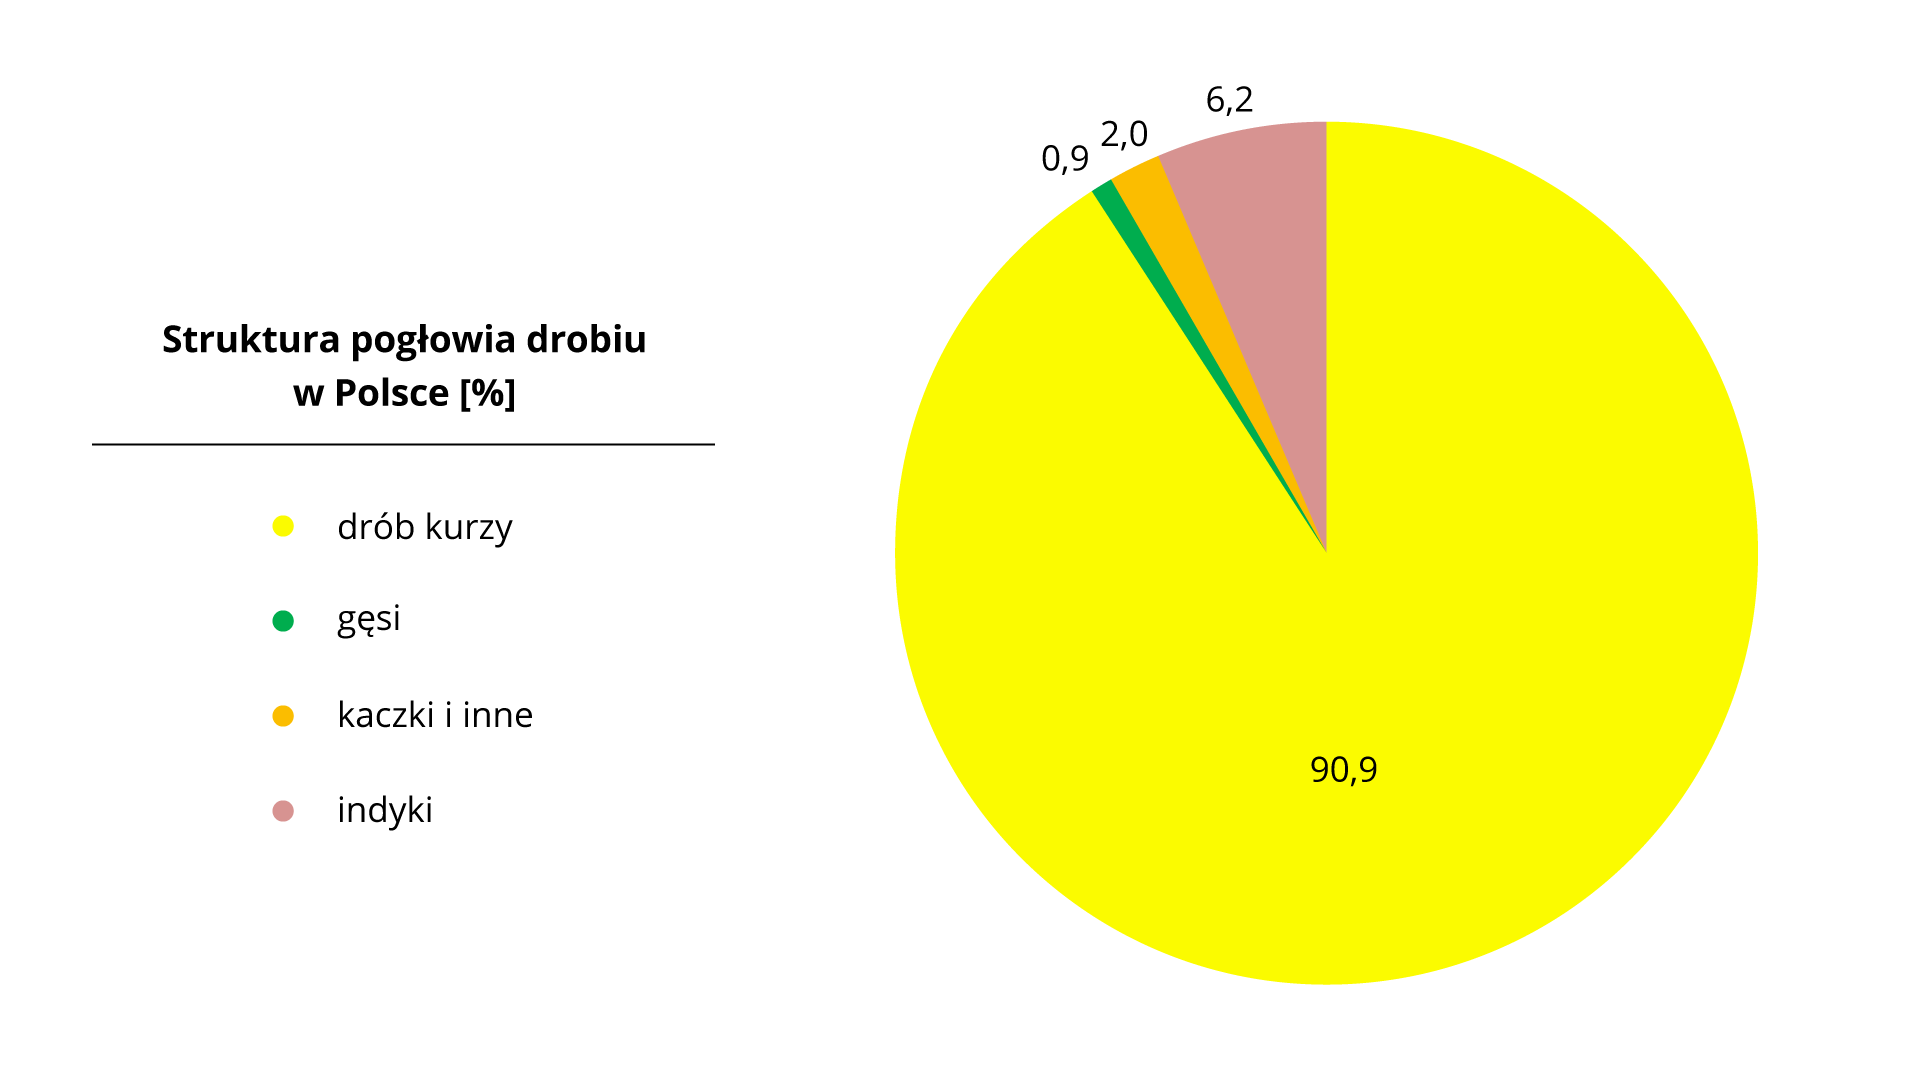 Na ilustracji diagram kołowy – struktura pogłowia drobiu w Polsce. Drób kurzy 90,9%, gęsi 0,9%, indyki 6,2%, kaczki i inne 2,0%.